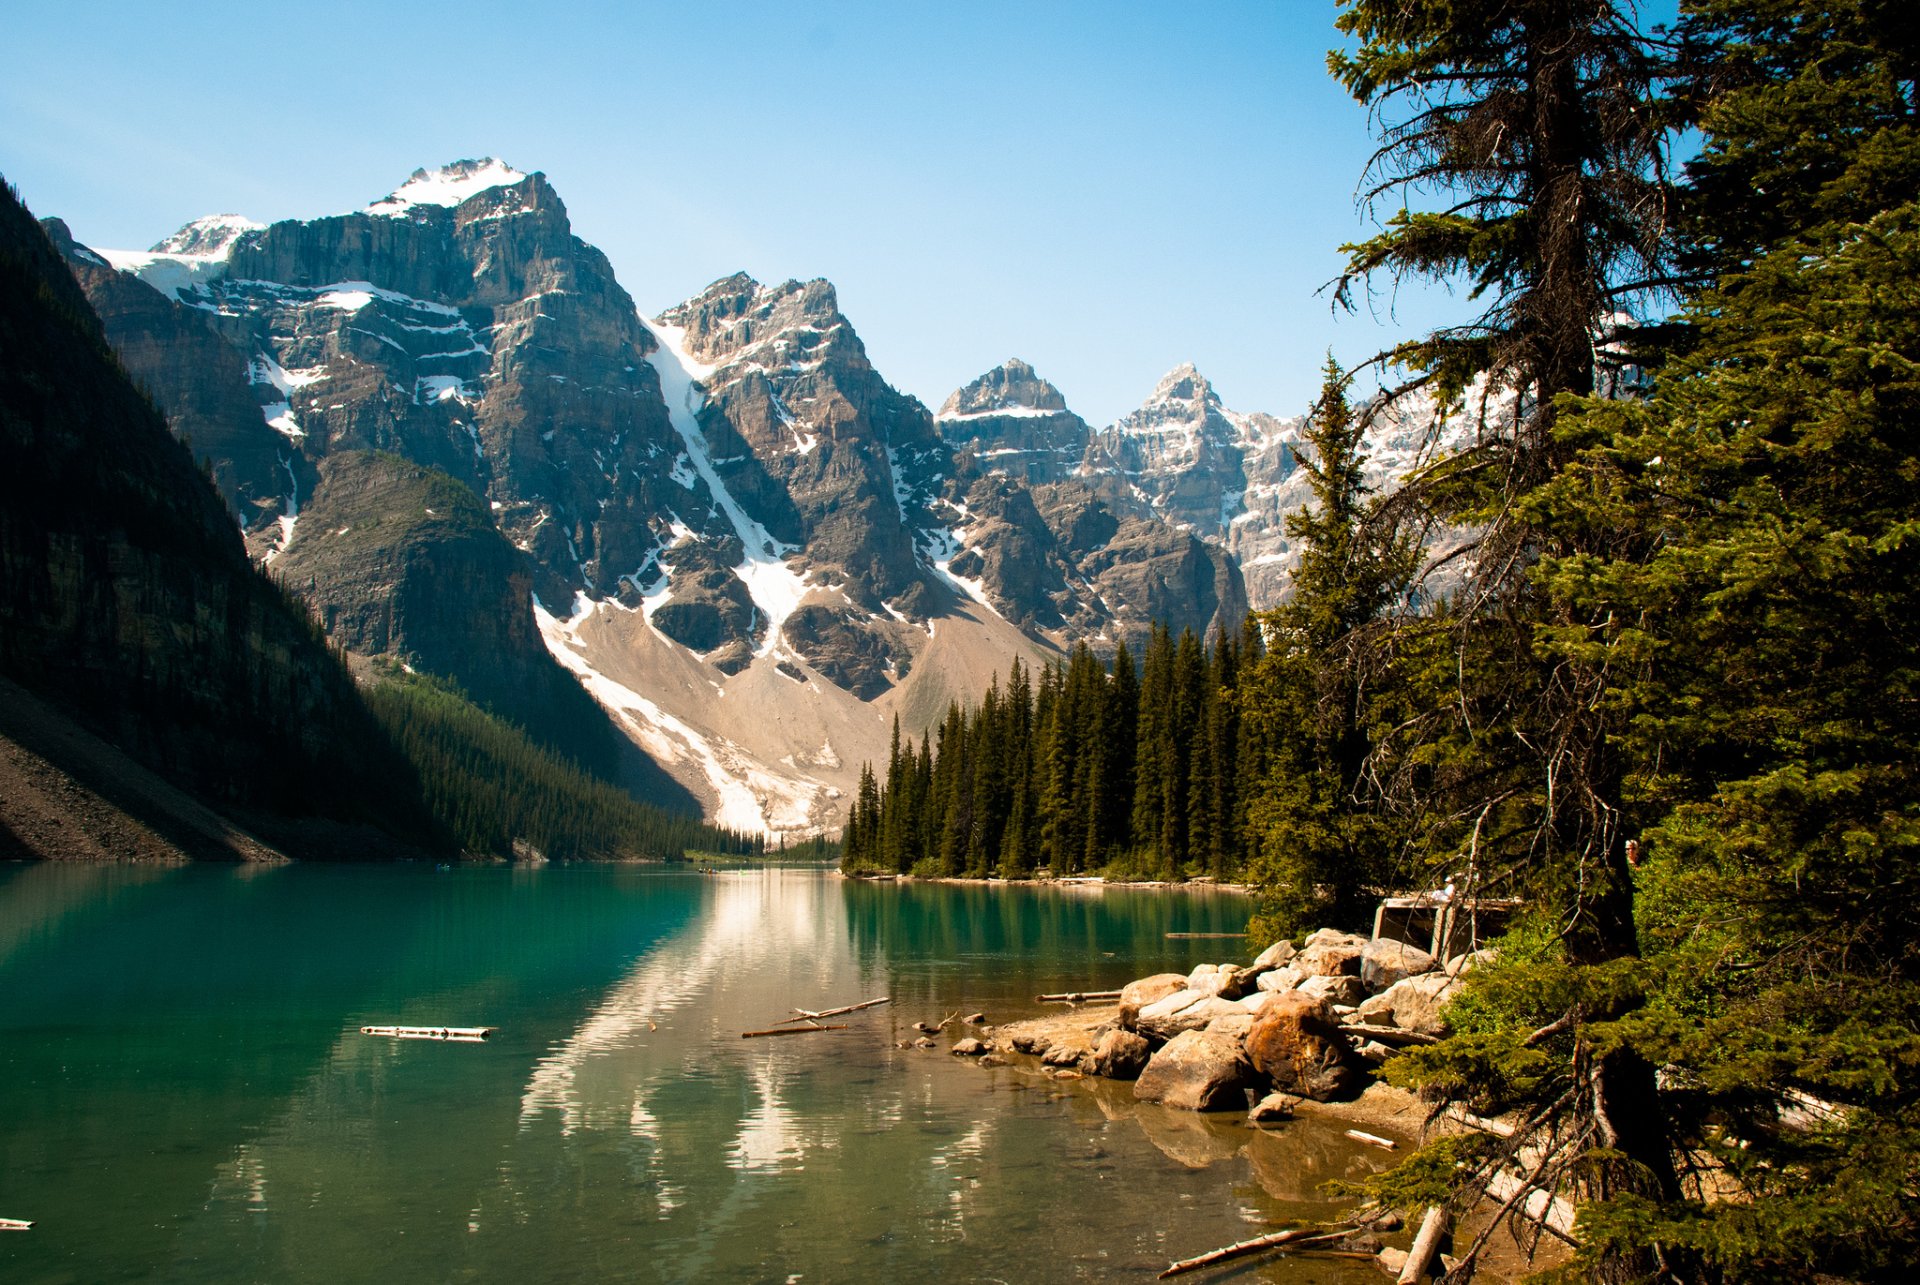 Картинка на обои высокого качества. Национальный парк Банф, Канада. Озеро Морейн. Озеро Кольсай. Озеро Морейн Канада осень.